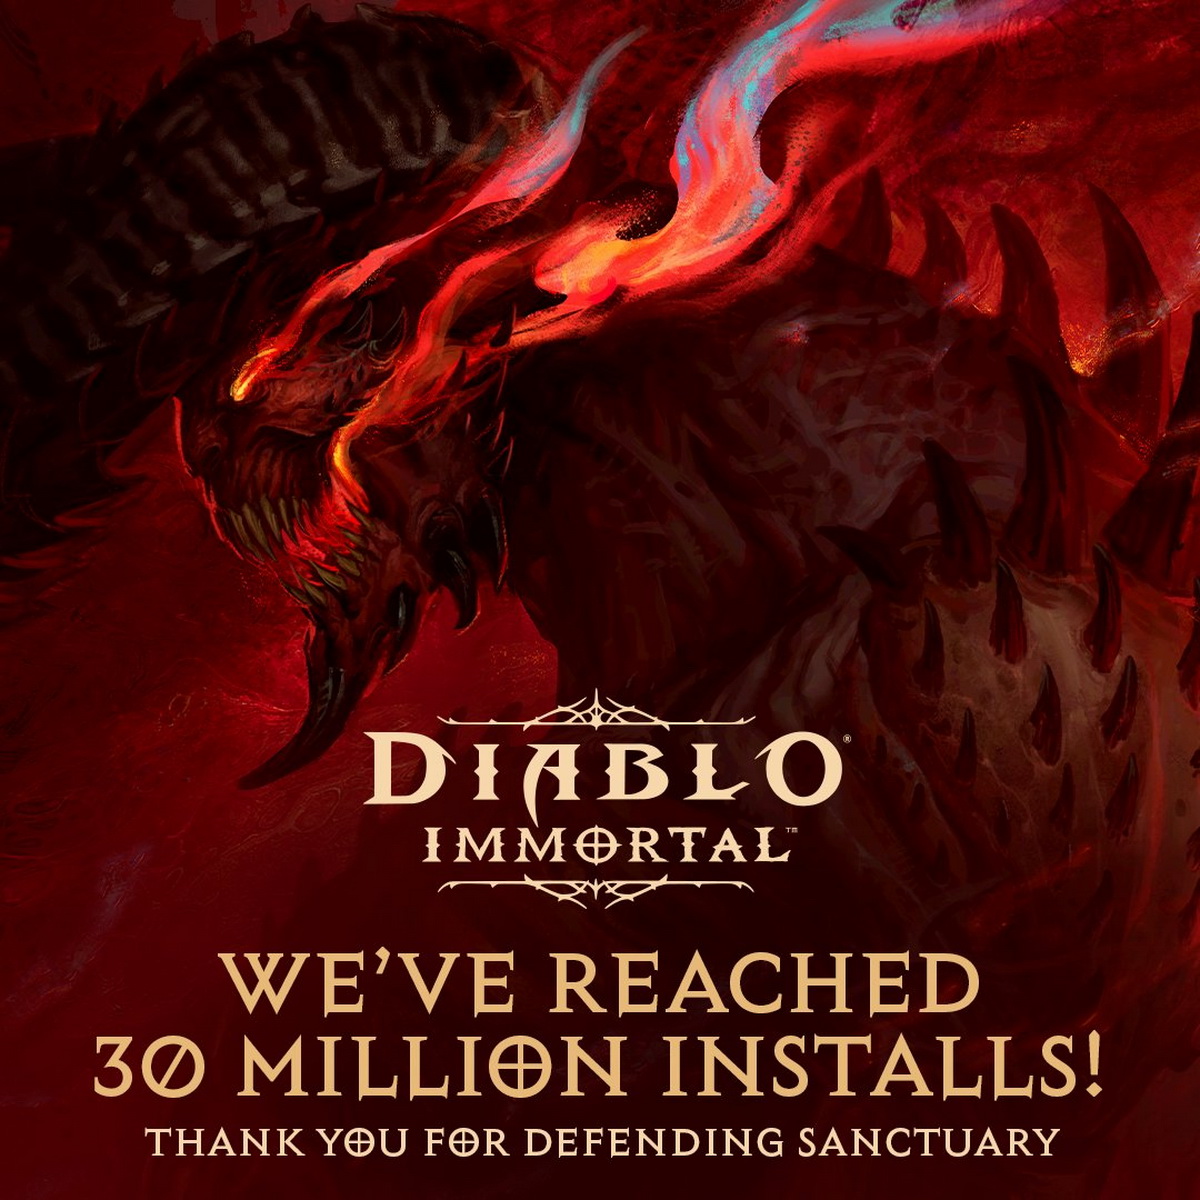 Загрузки Diablo Immortal перевалили за 30 миллионов - фото 1